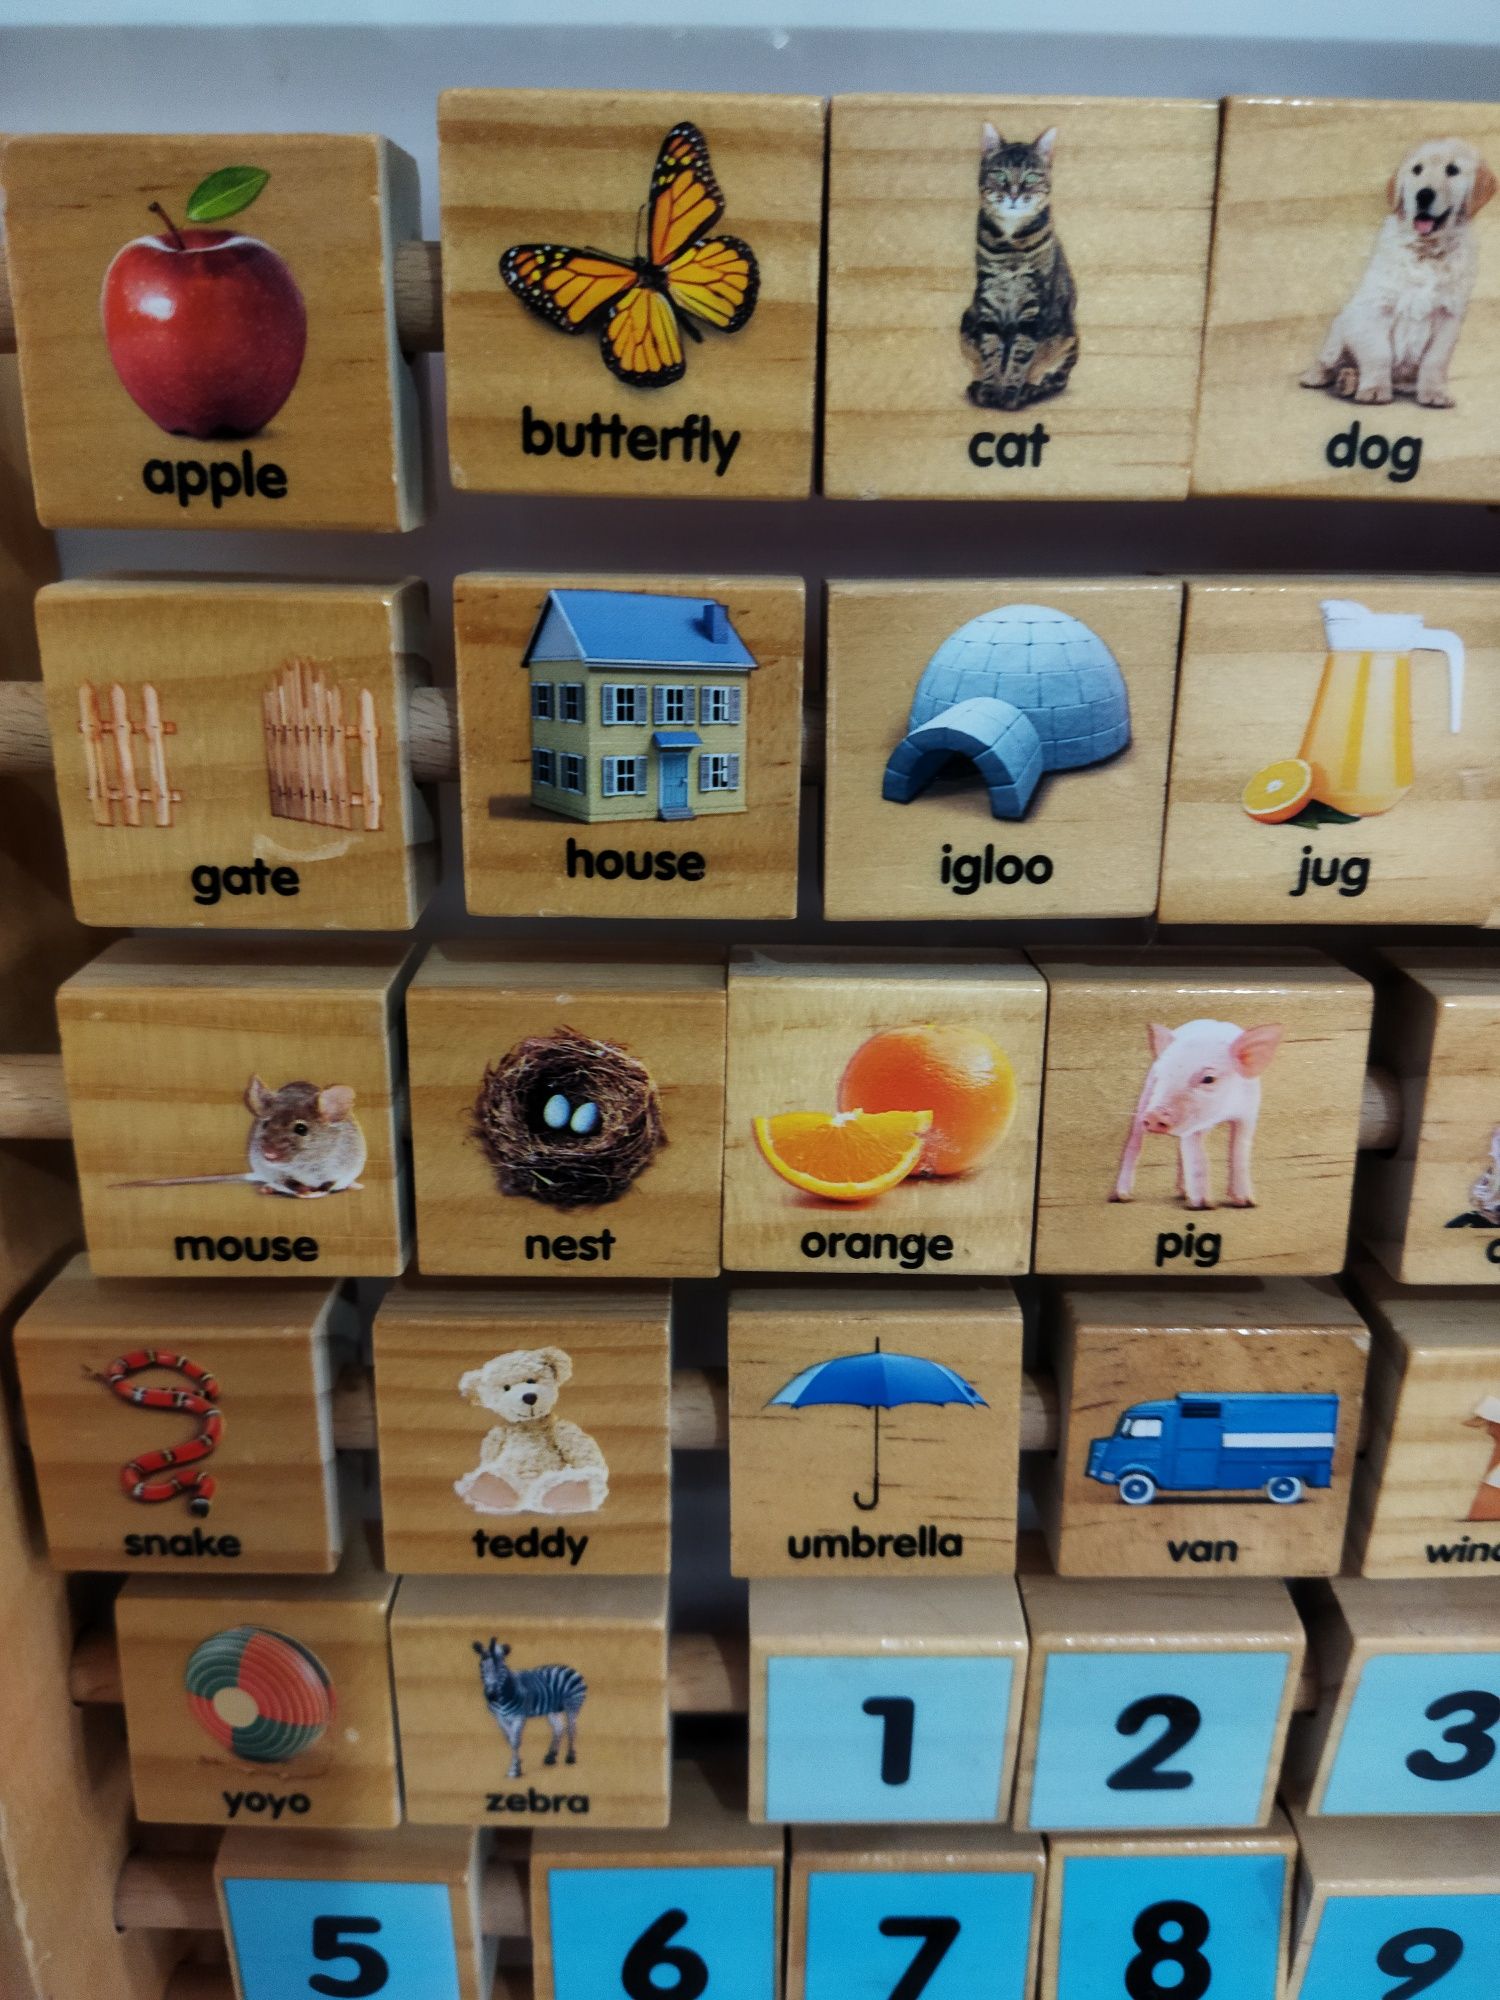 Abac din lemn învățare cuvinte alfabet și litere cifre in engleza